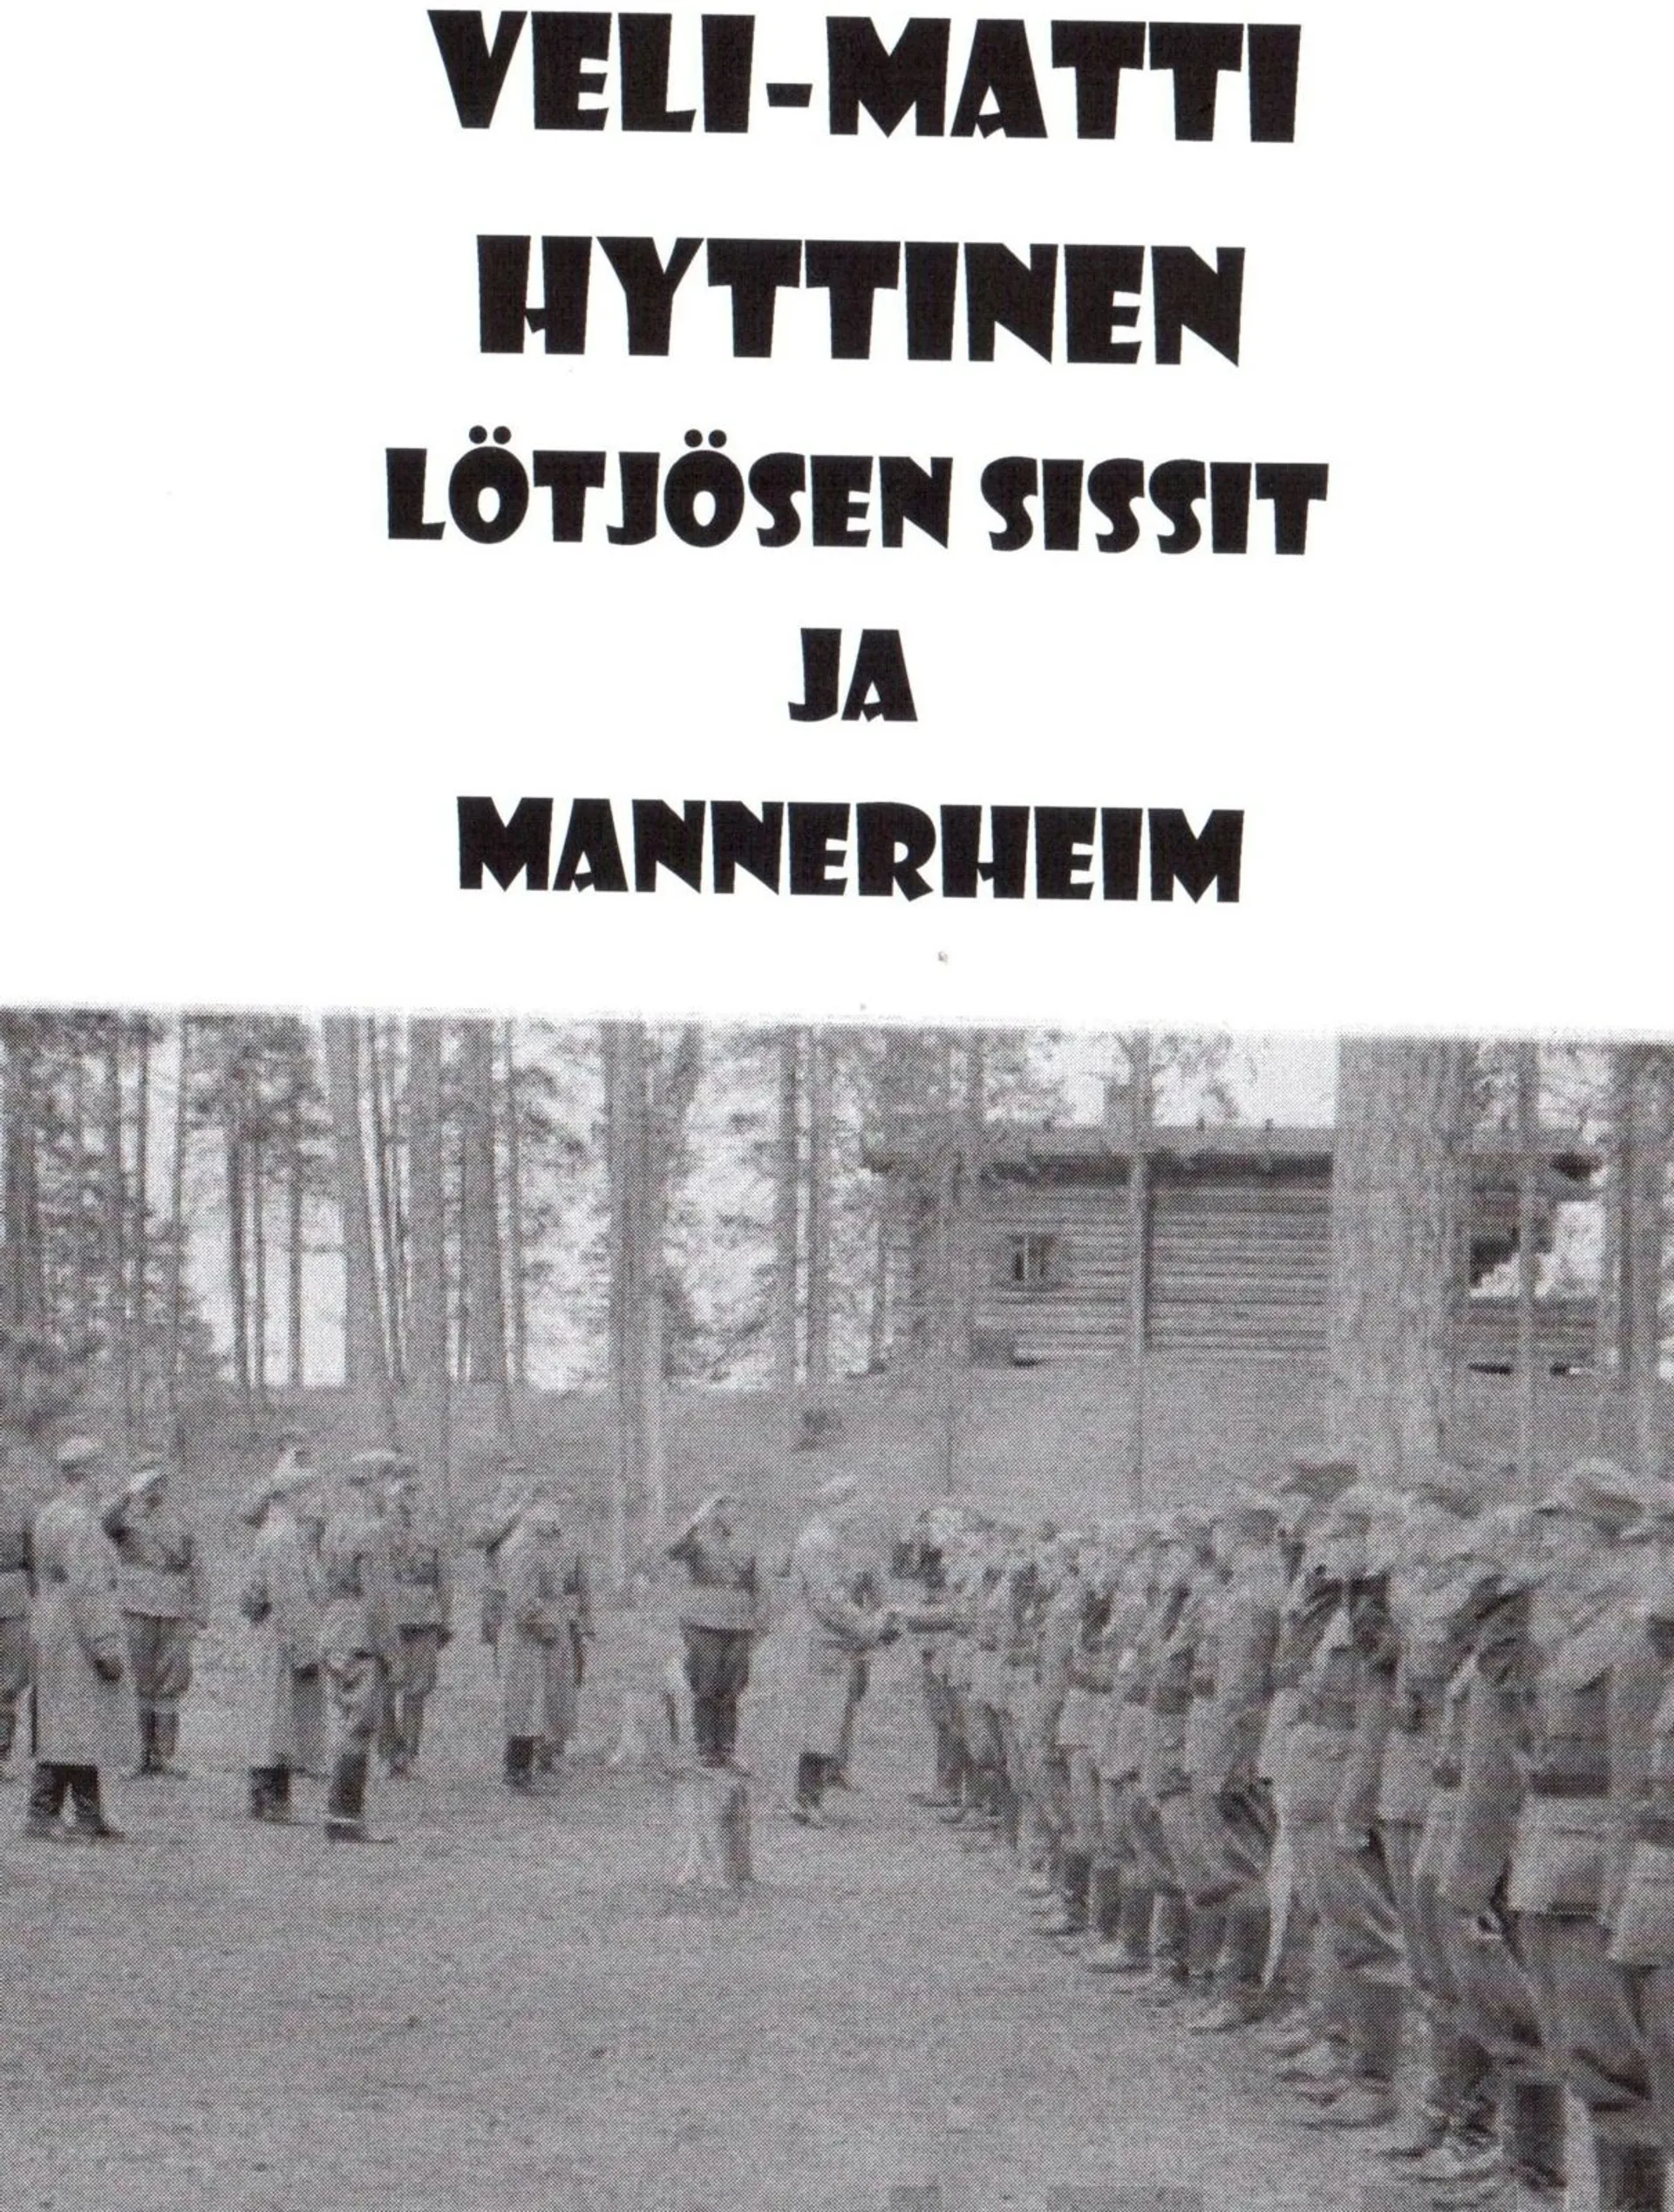 Hyttinen, Lötjösen sissit ja Mannerheim